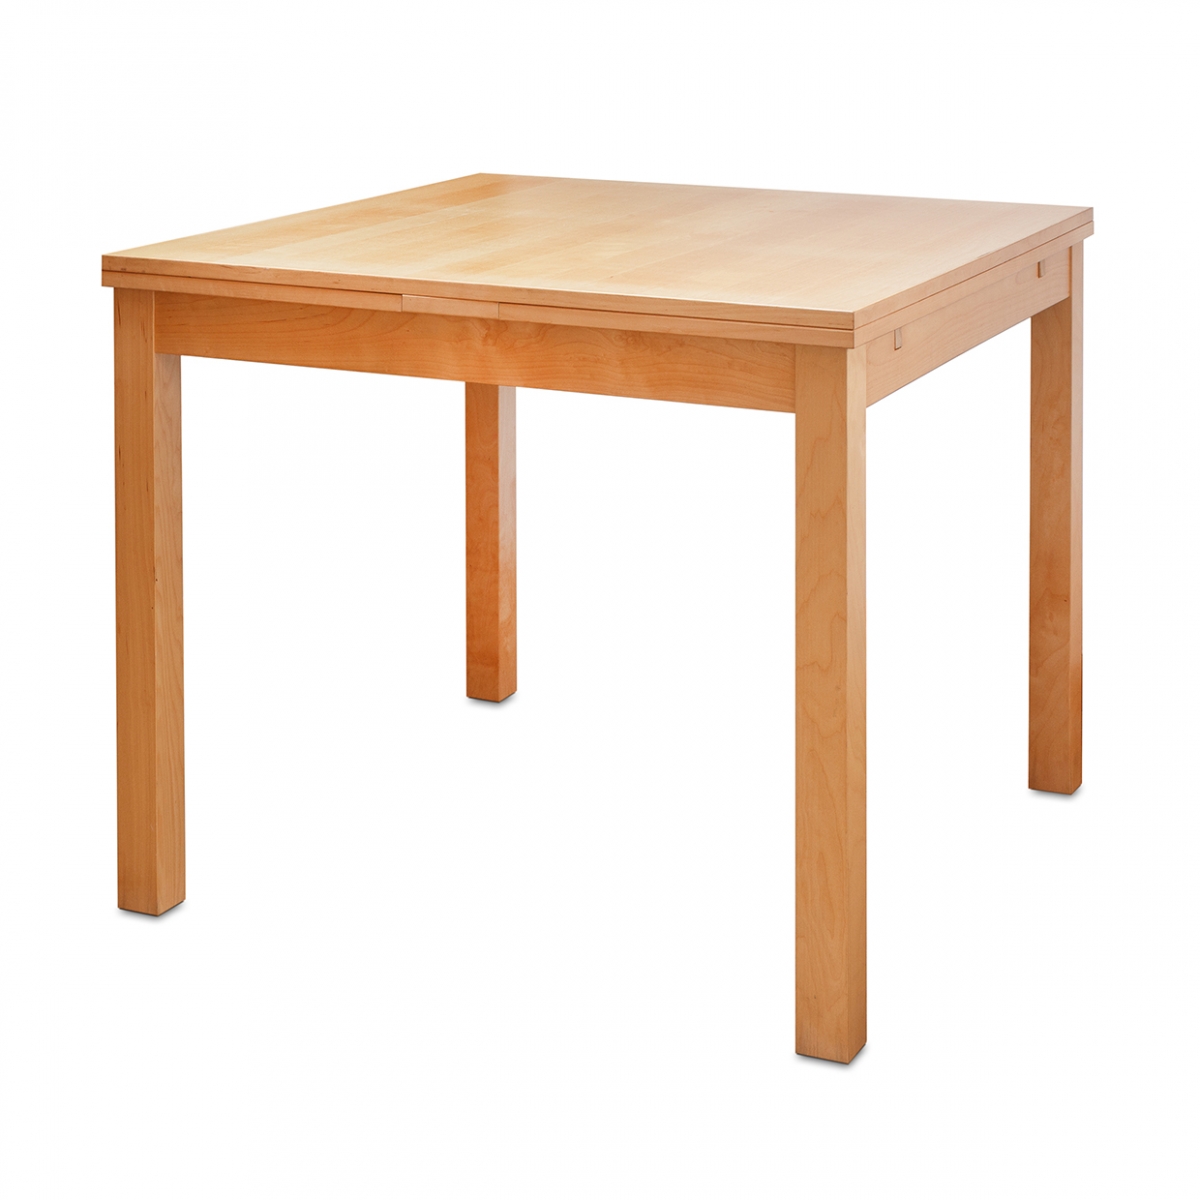 Imagen en la que se ve una mesa de madera